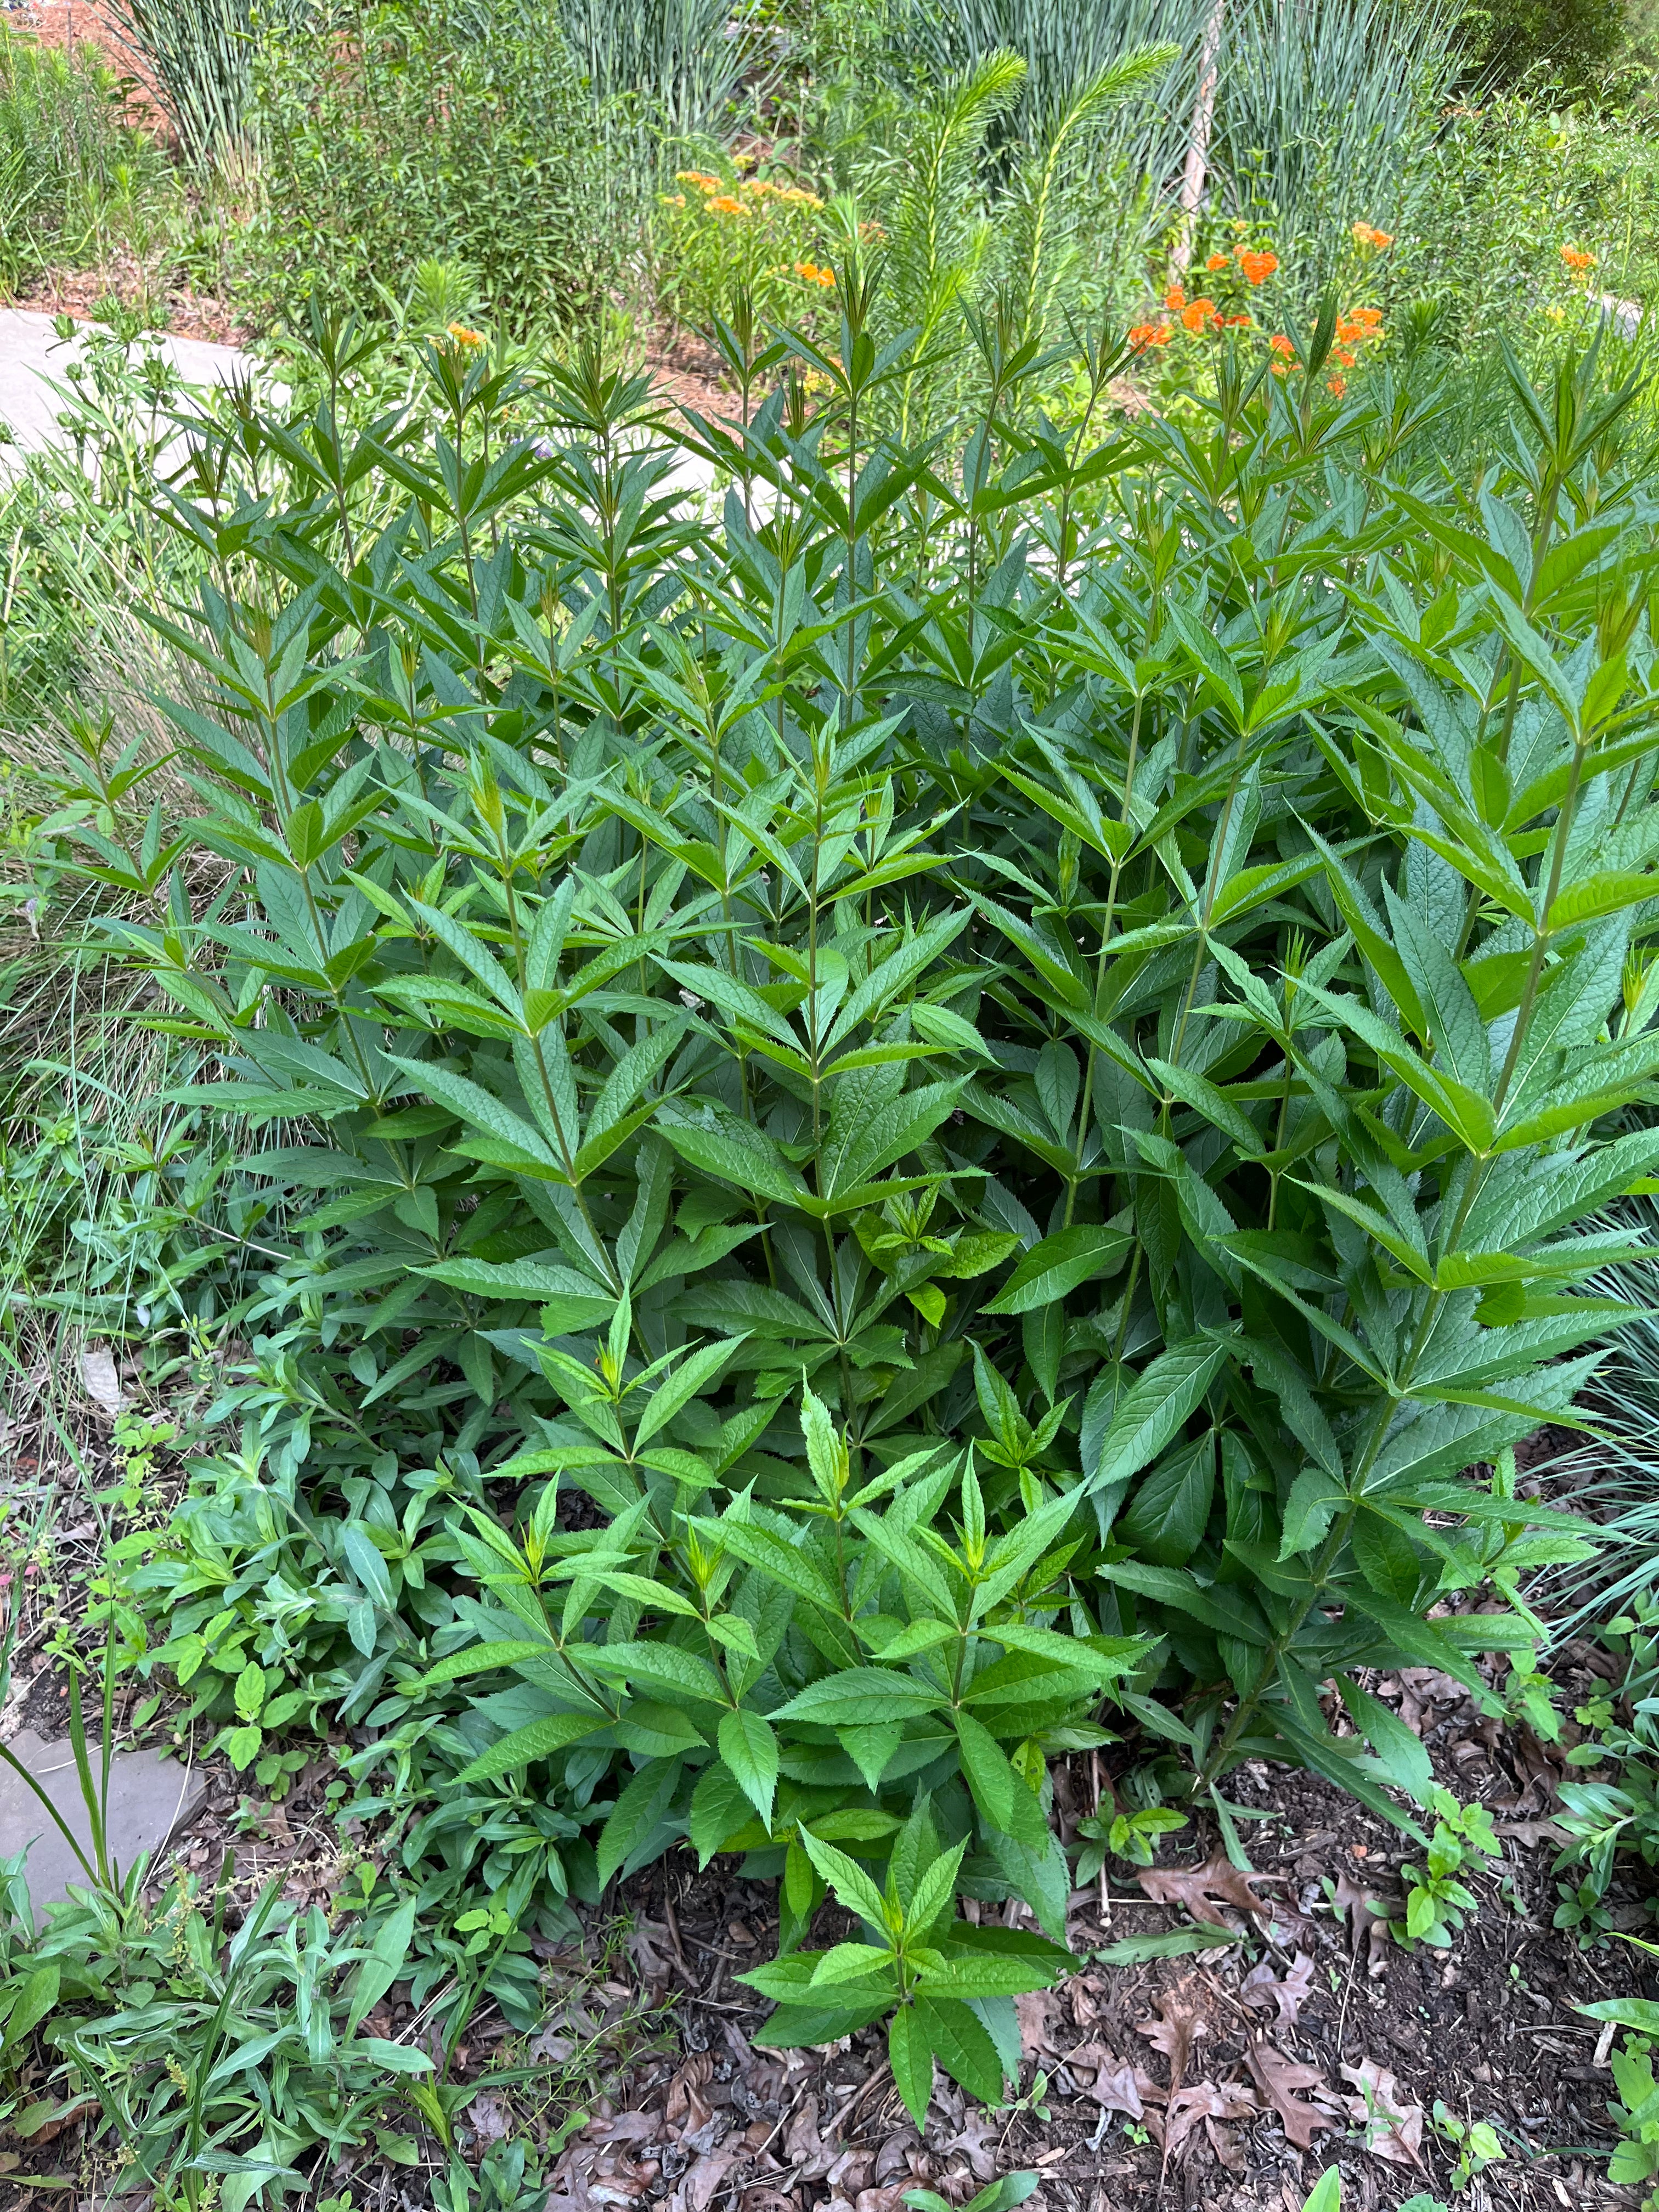 Veronicastrum virginicum / Culver's Root (Plantain Family)